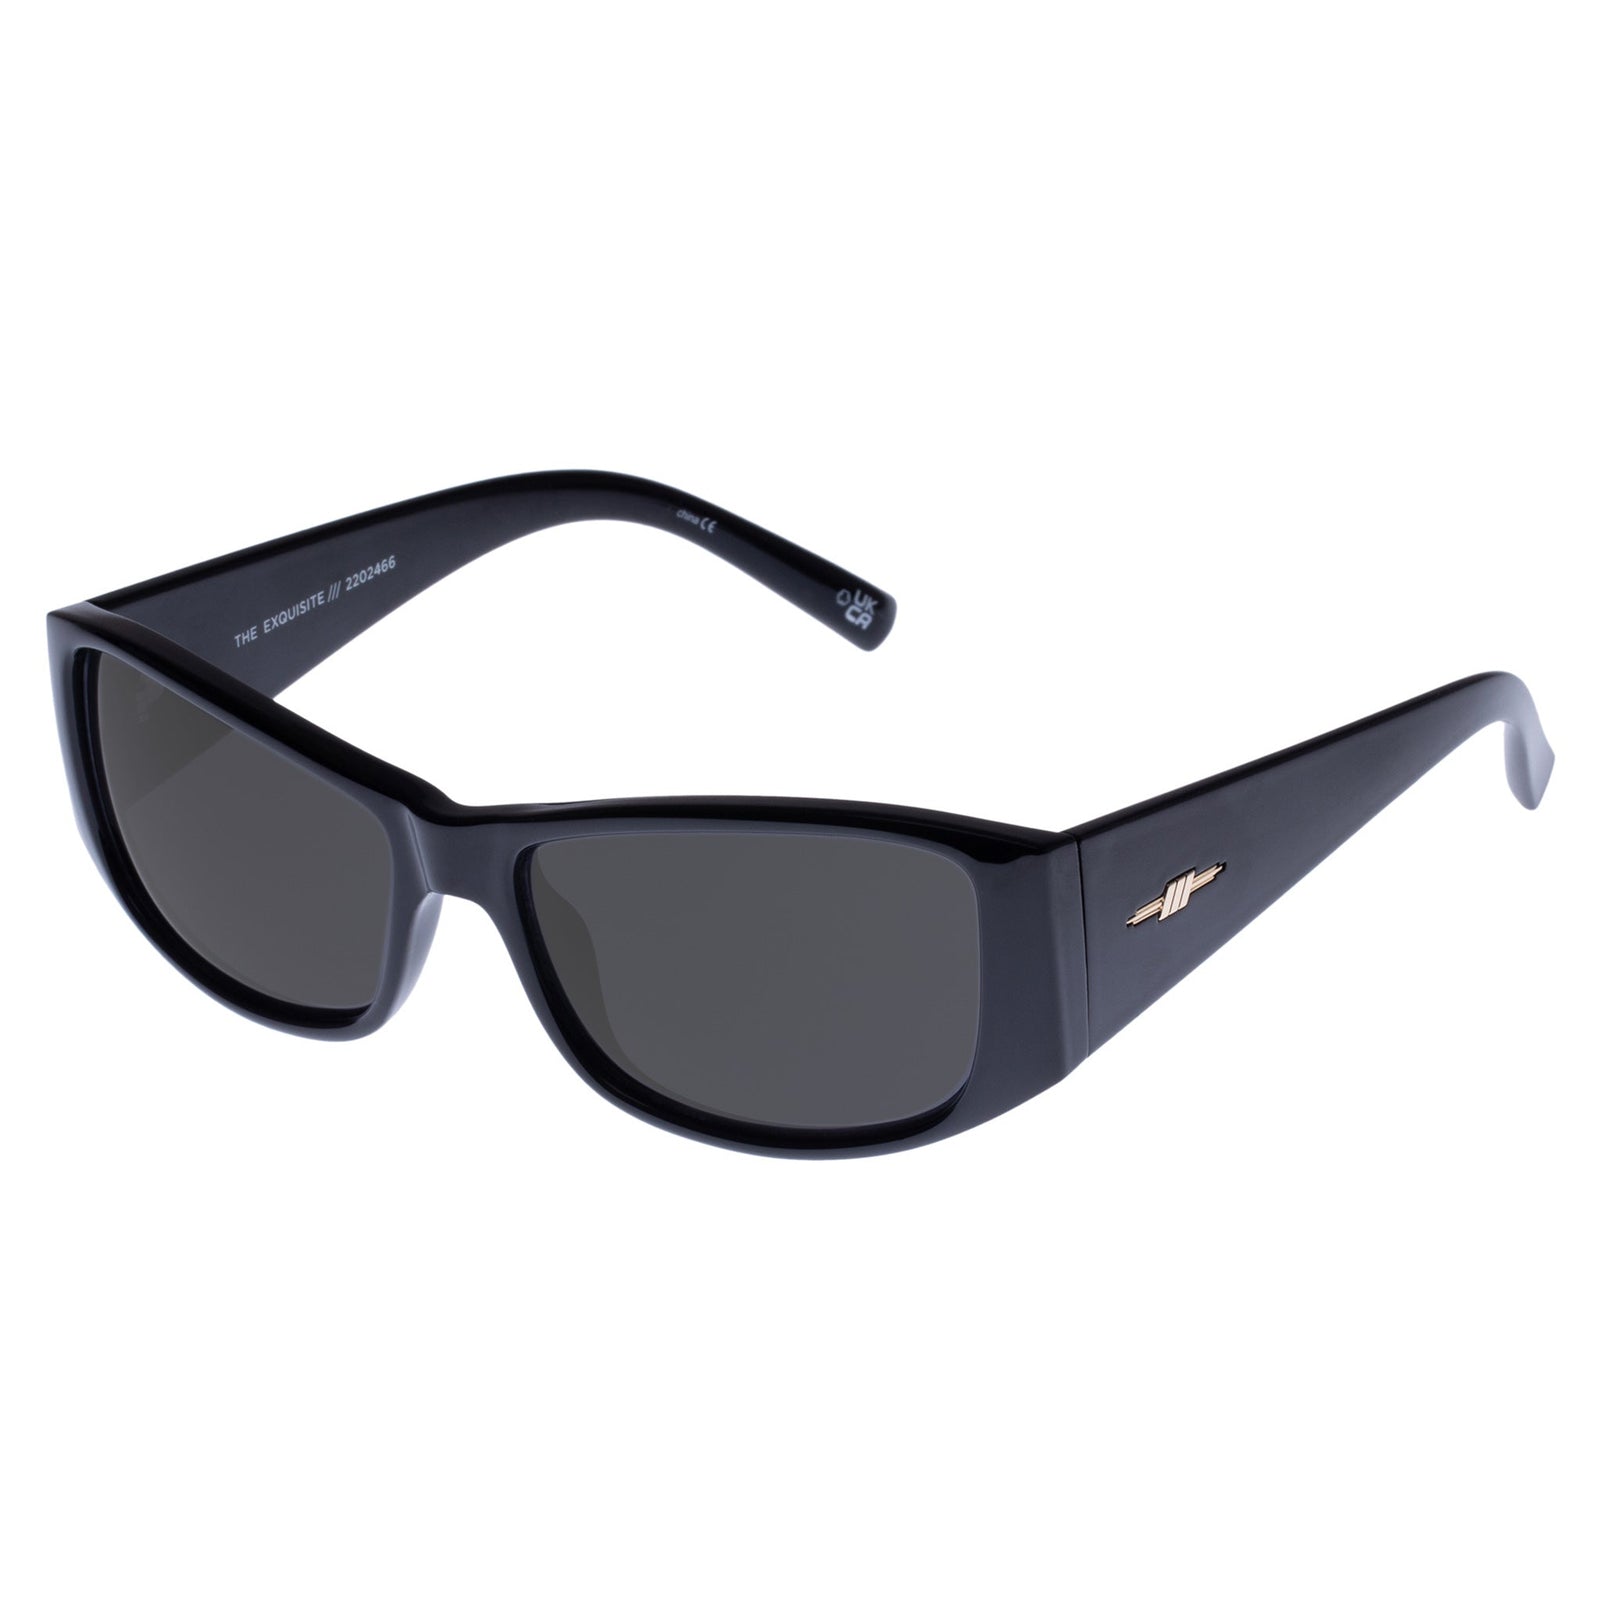 15 Yrs To Adults] Fuglies RX06 Wrap Around Sunglasses [Gloss Black]  (Prescription/Rx Lenses Available), Prescription Sun Goggles